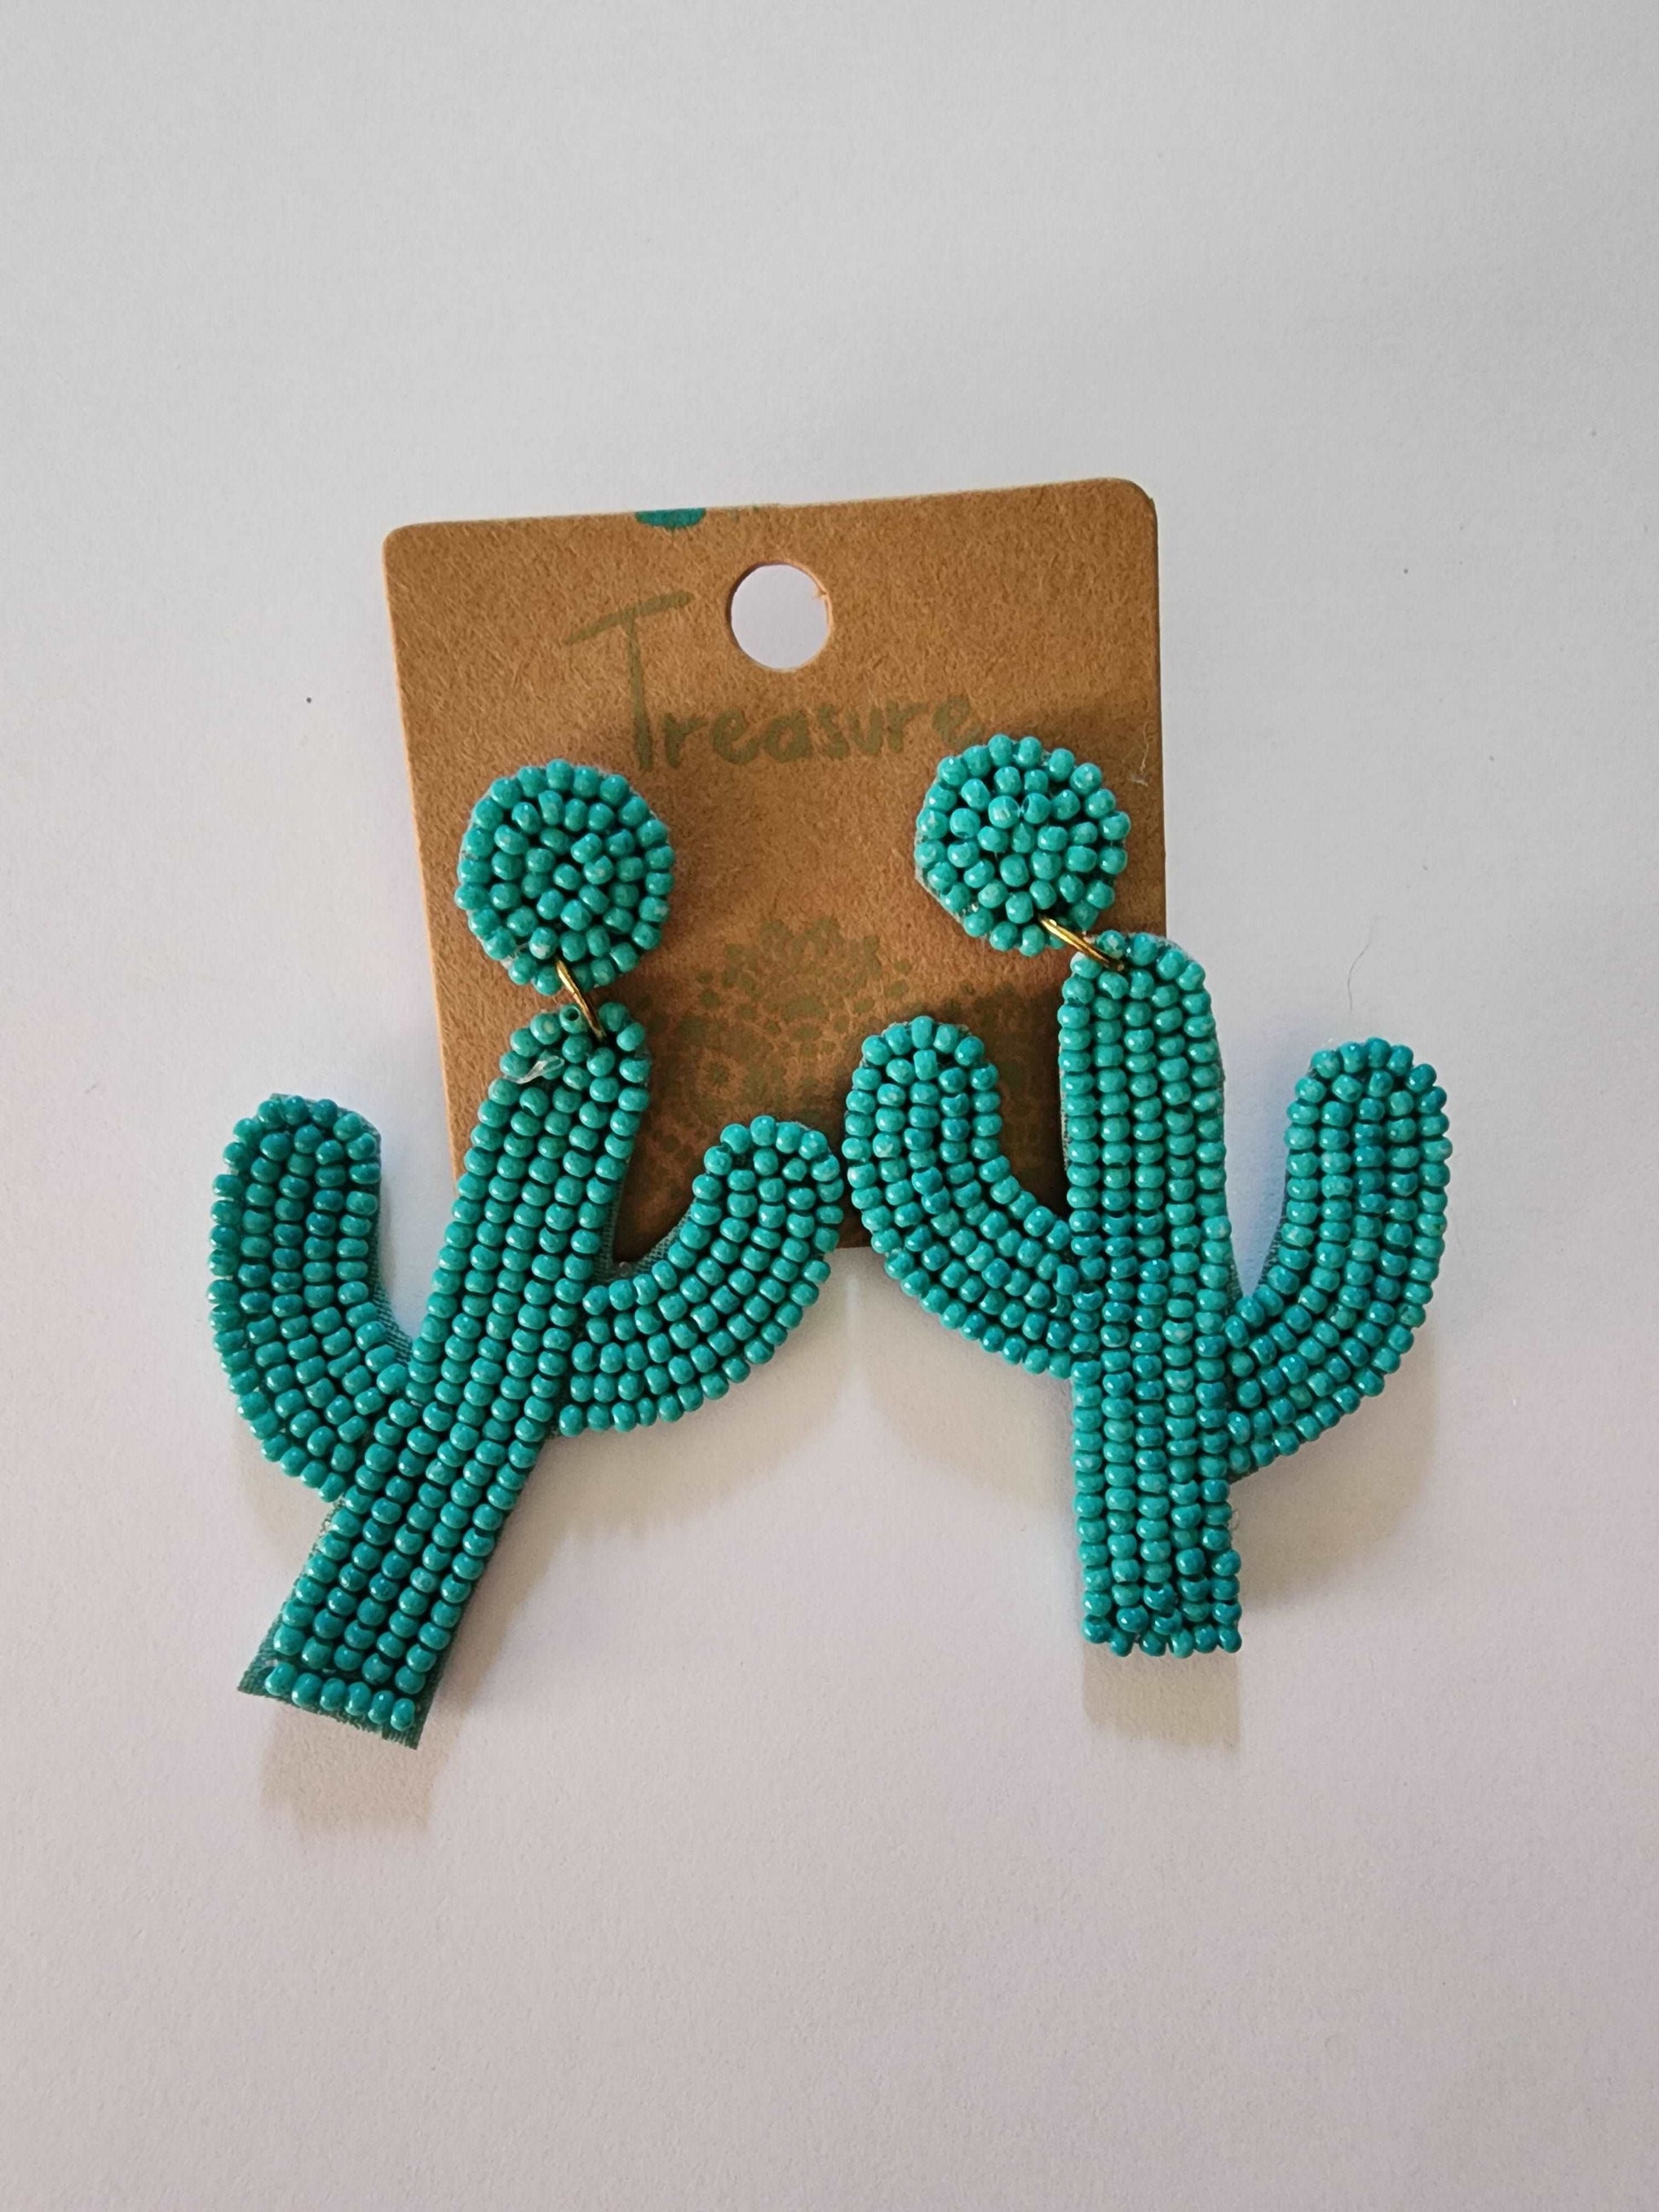 Teal Beaded Cactus Earrings